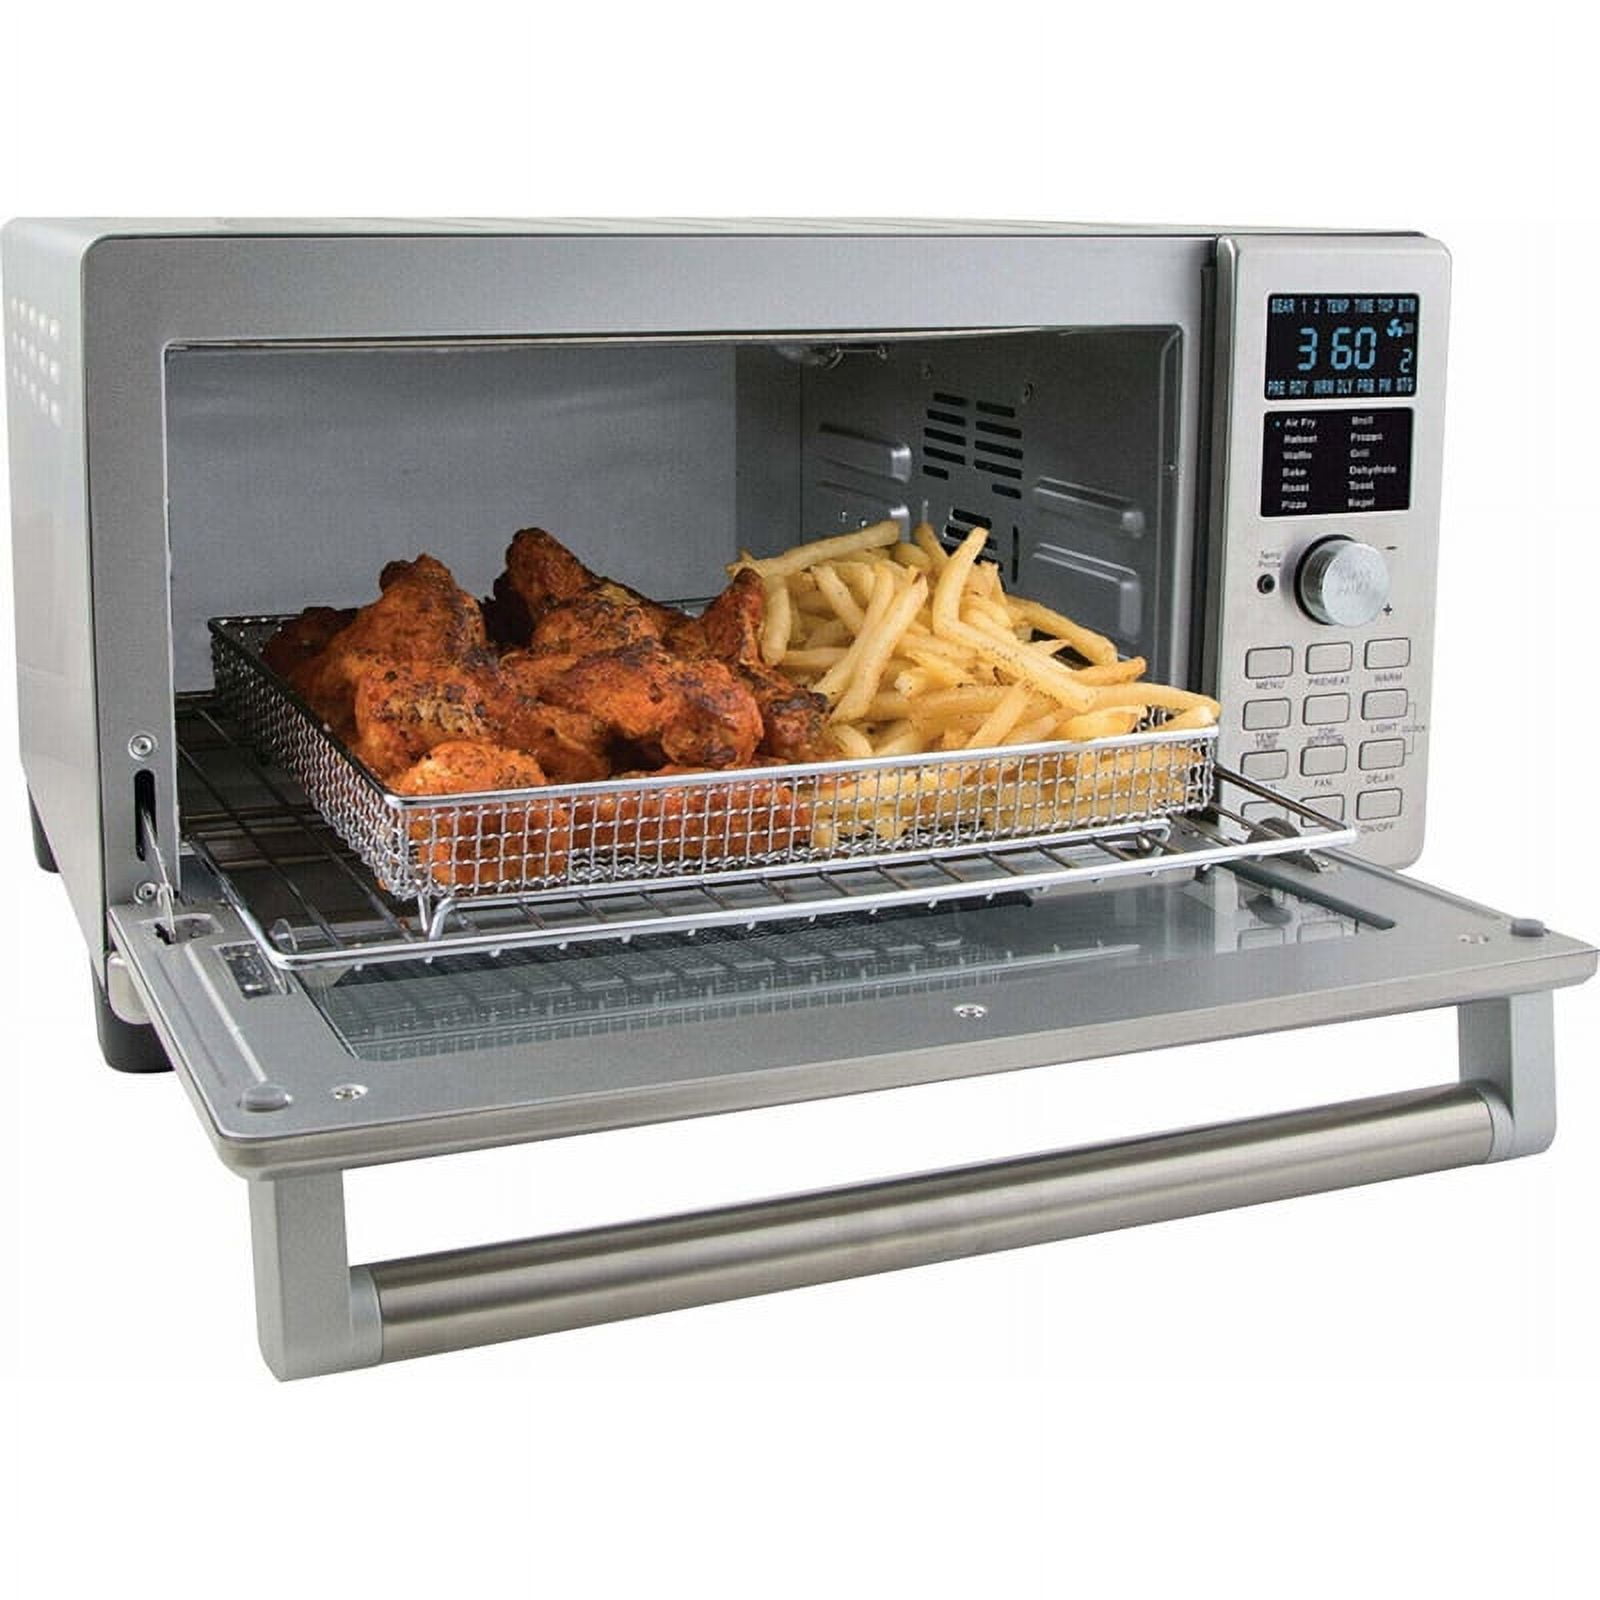 NuWave Bravo XL Air Fryer Convection Oven – WarrantyExtension